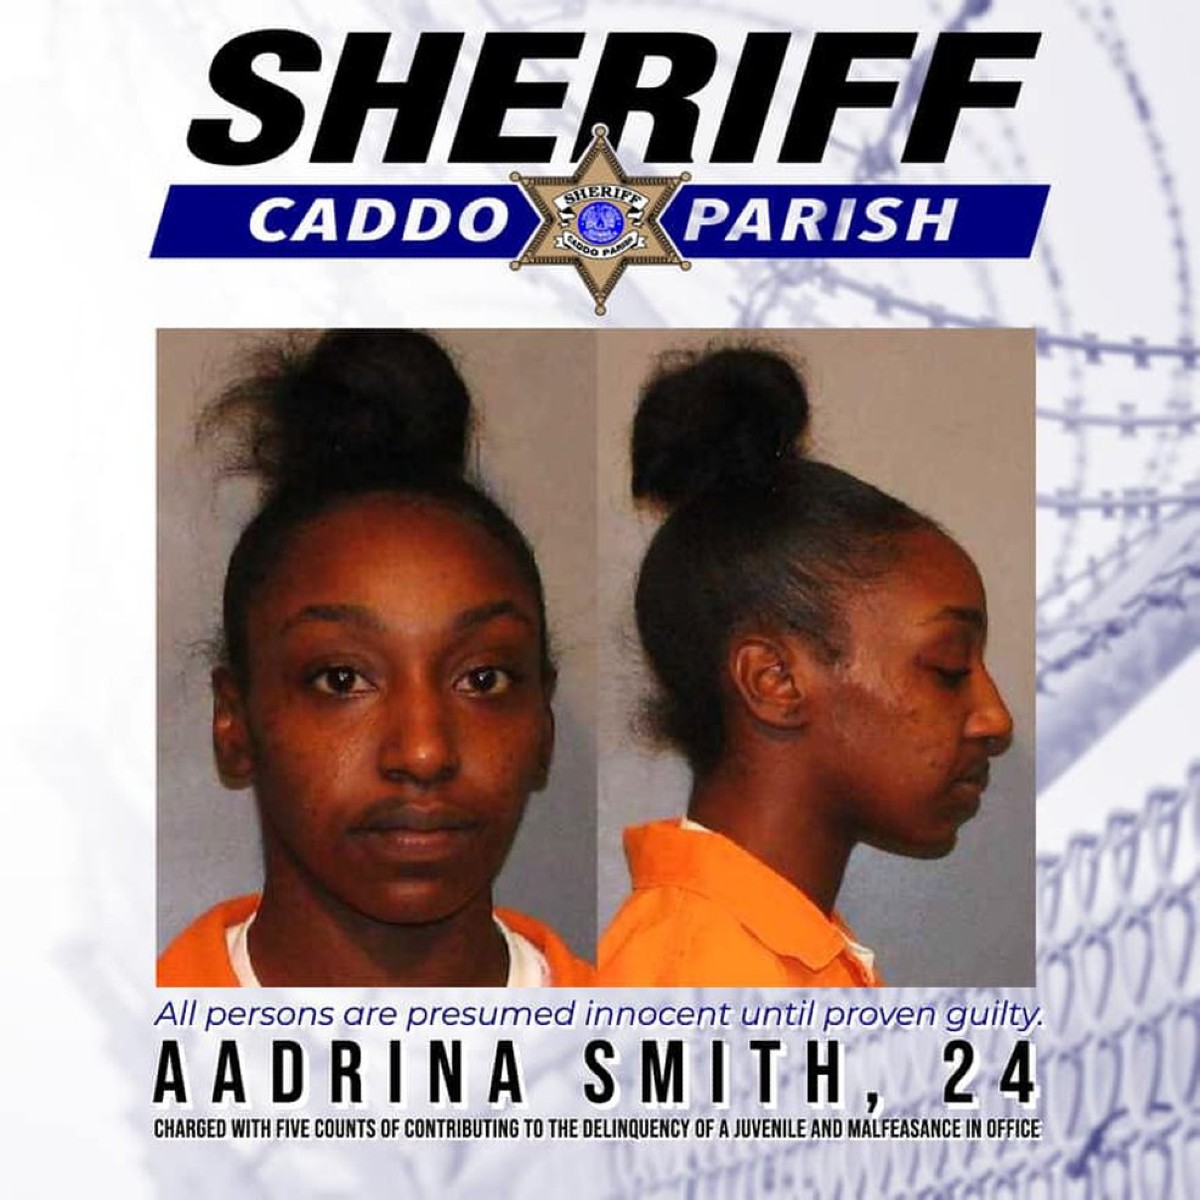 Aadrina Smith enfrenta cargos en Louisiana por contribuir a la delincuencia de menores.